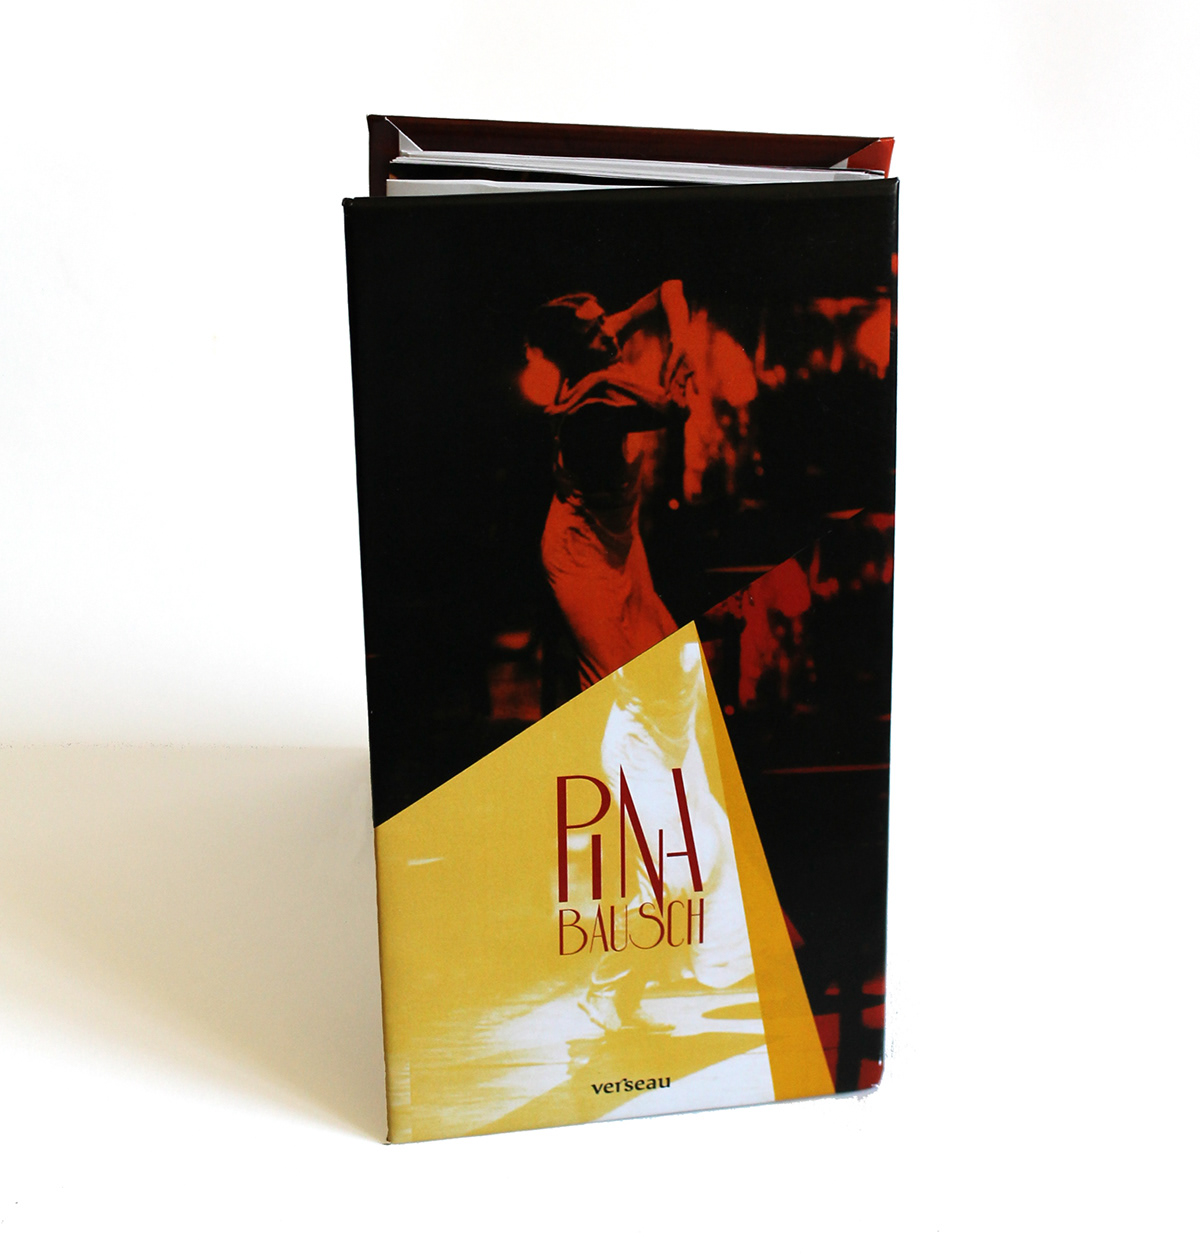 Pina Bausch book